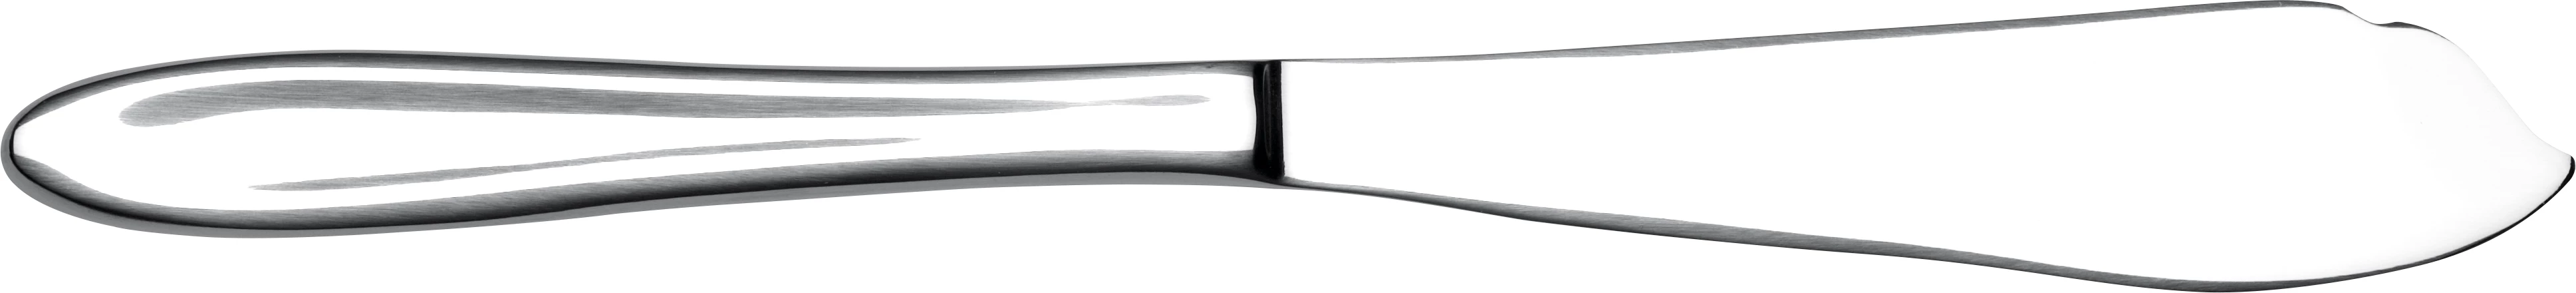 P1 lagkagekniv, 24,5 cm